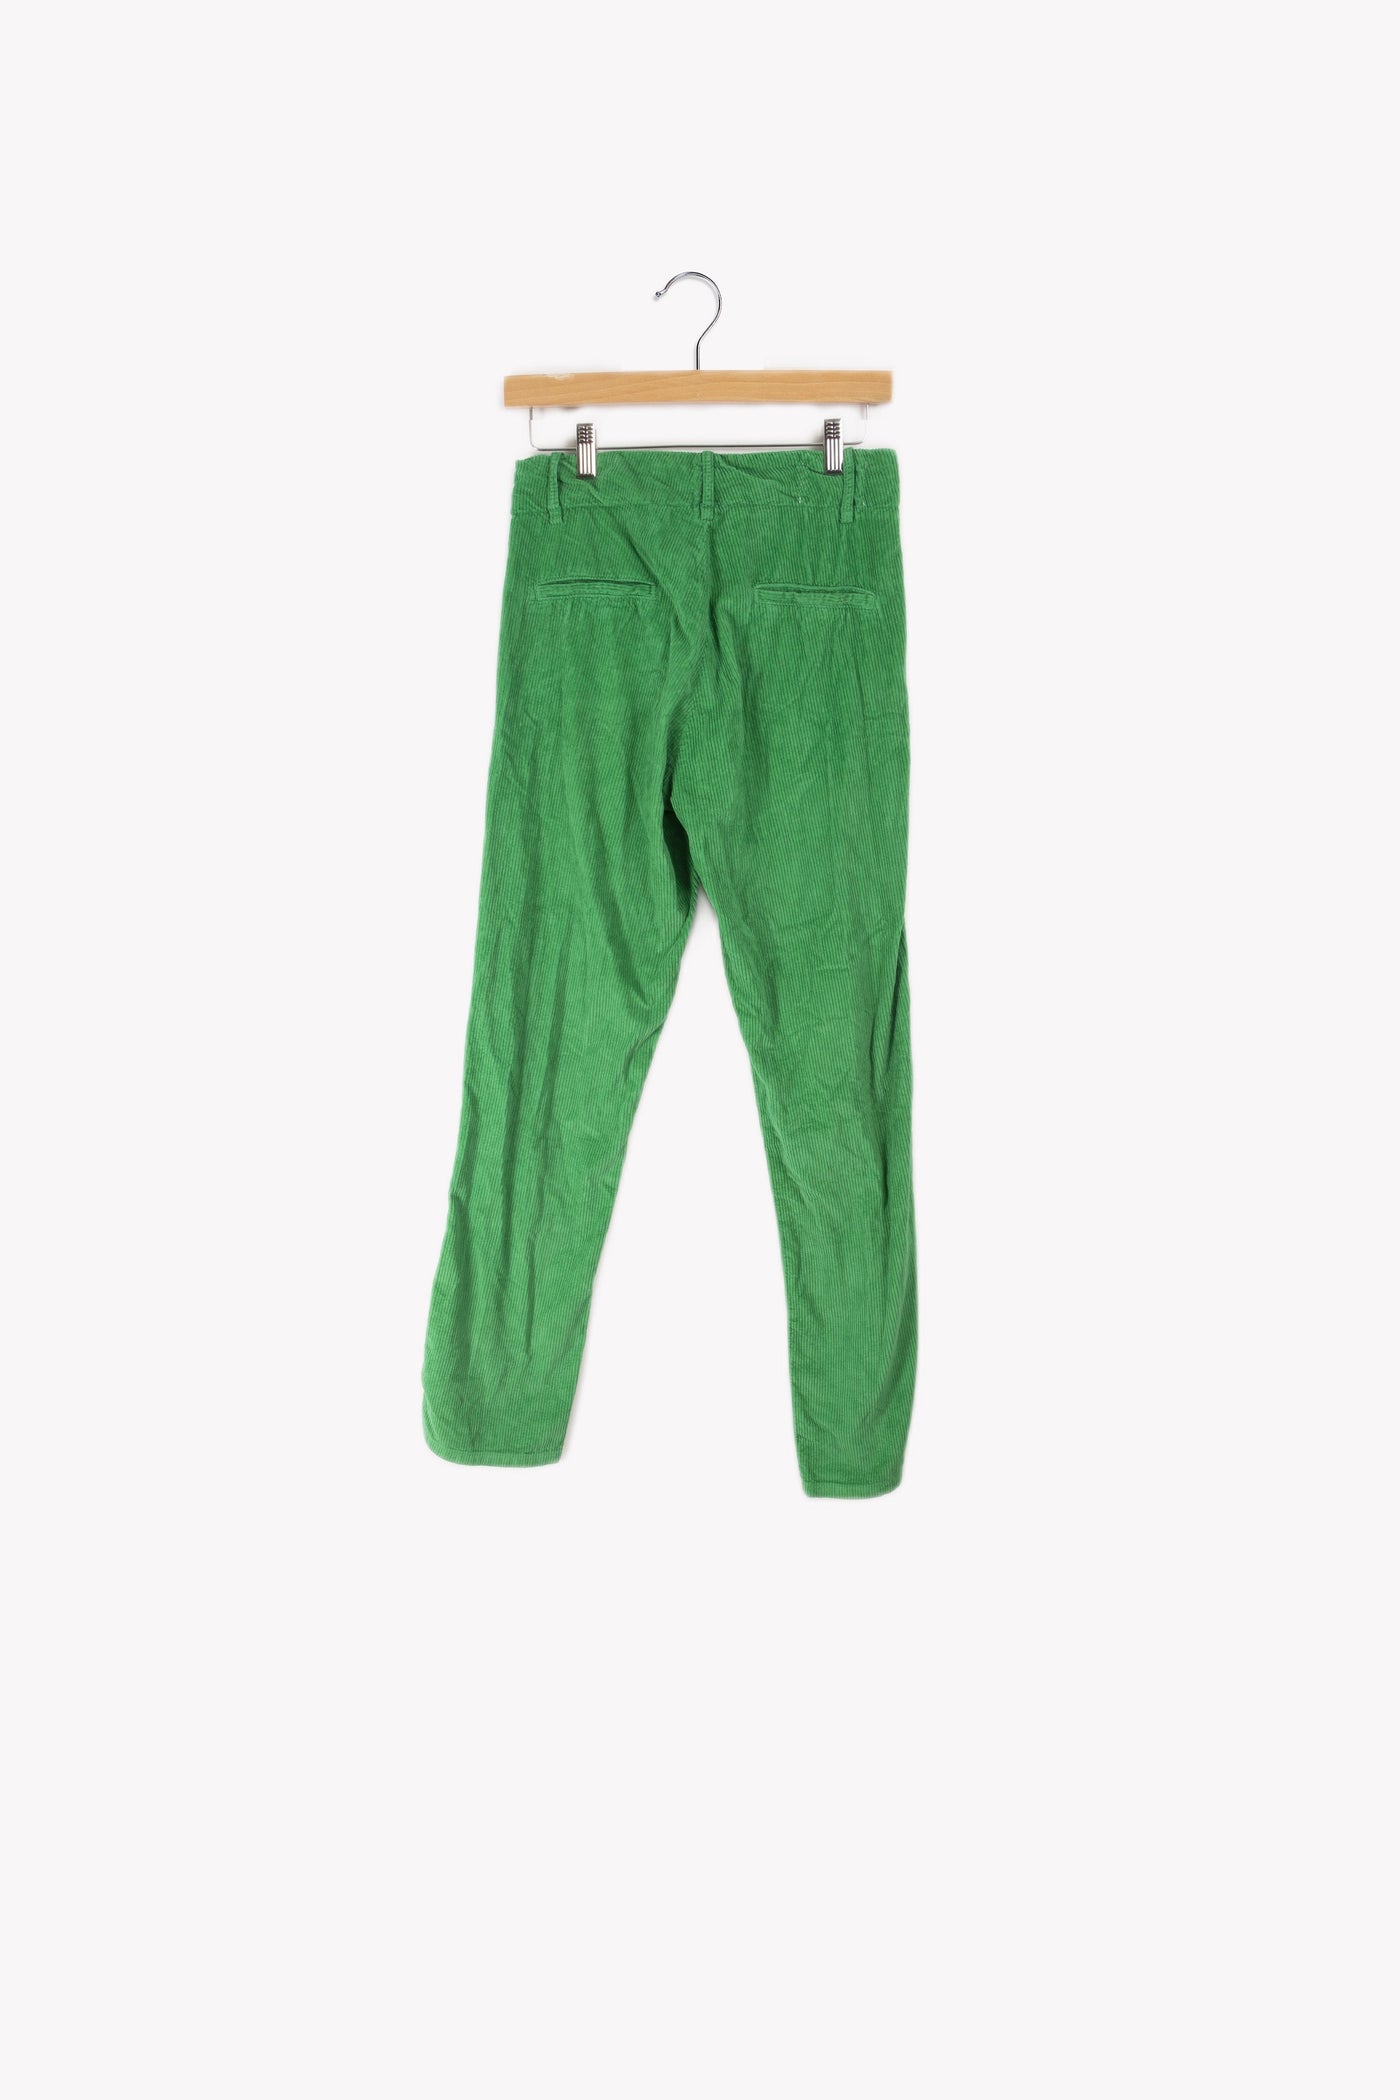 Pantalon vert - S/36